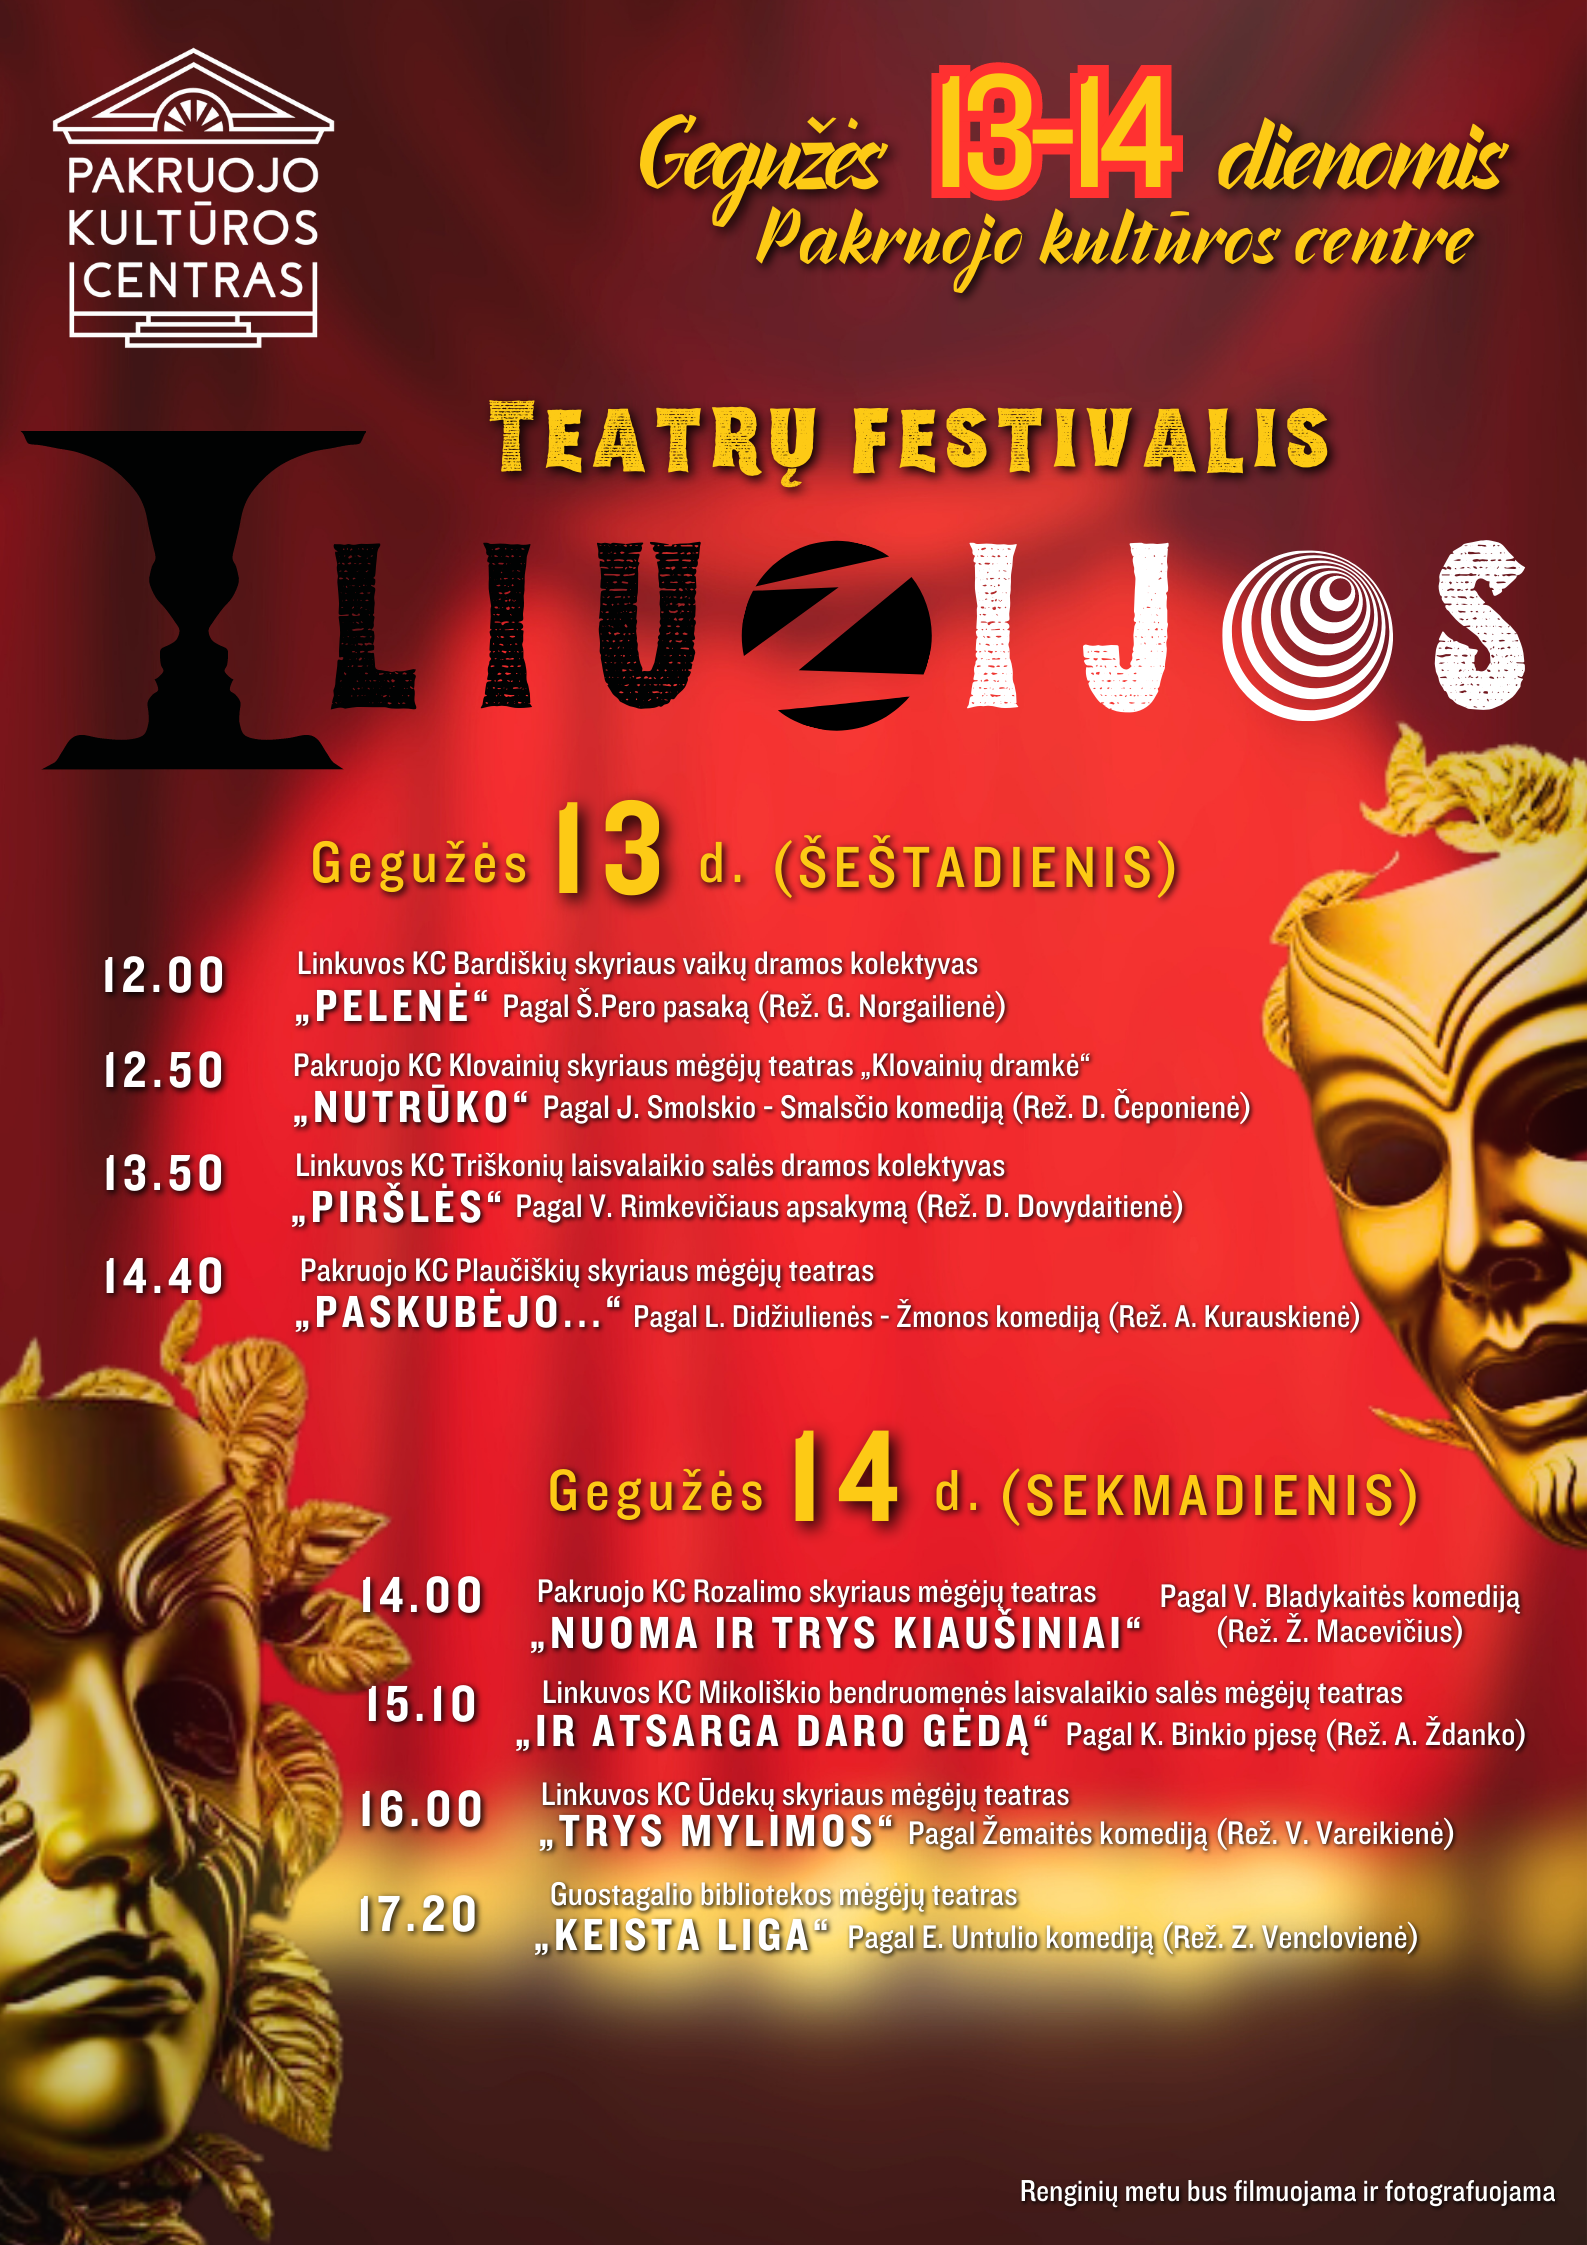 Kviečiame į teatrų festivalį ILIUZIJOS!